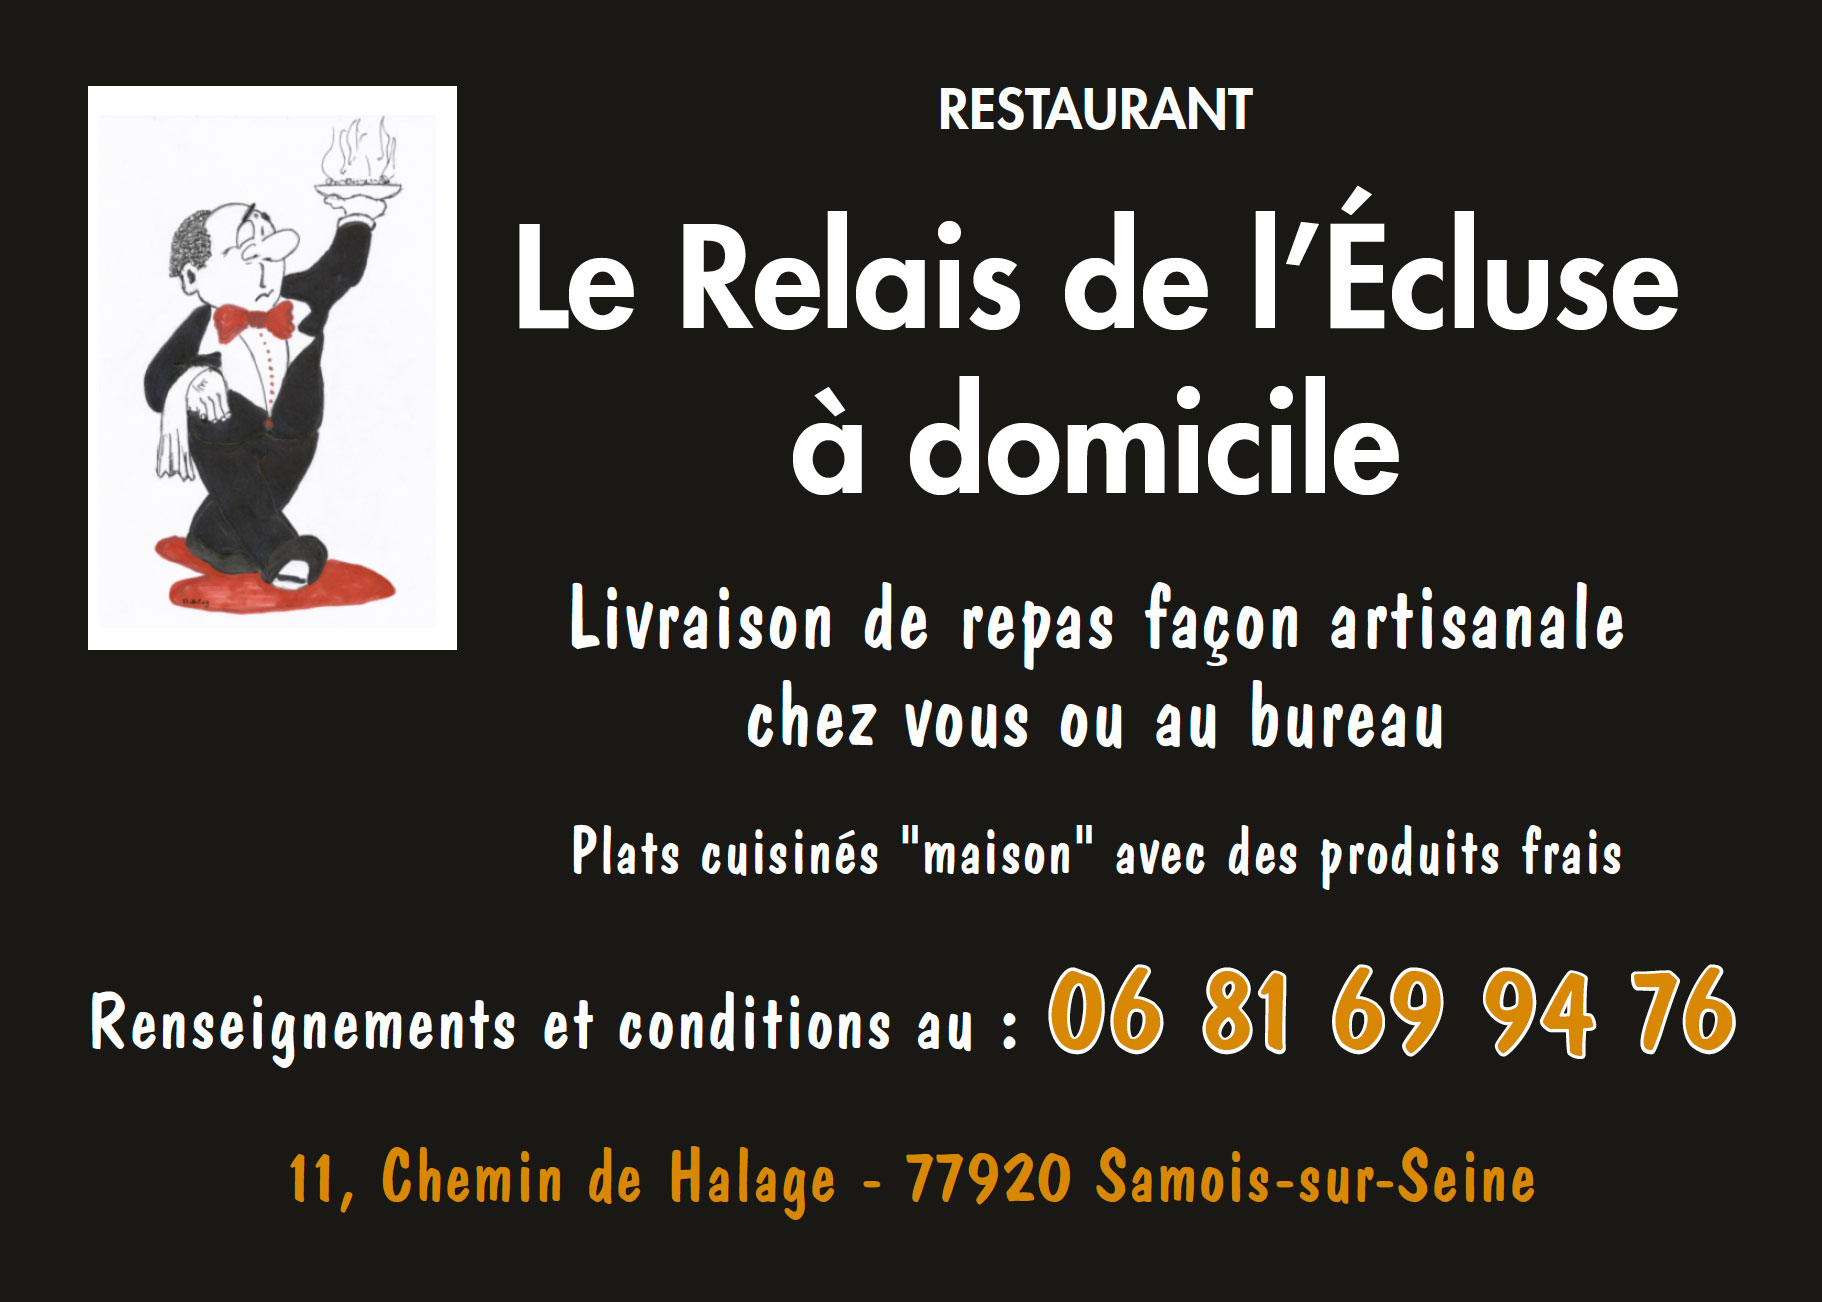 Le relais de L'Ecluse, restaurant, flyer, recto